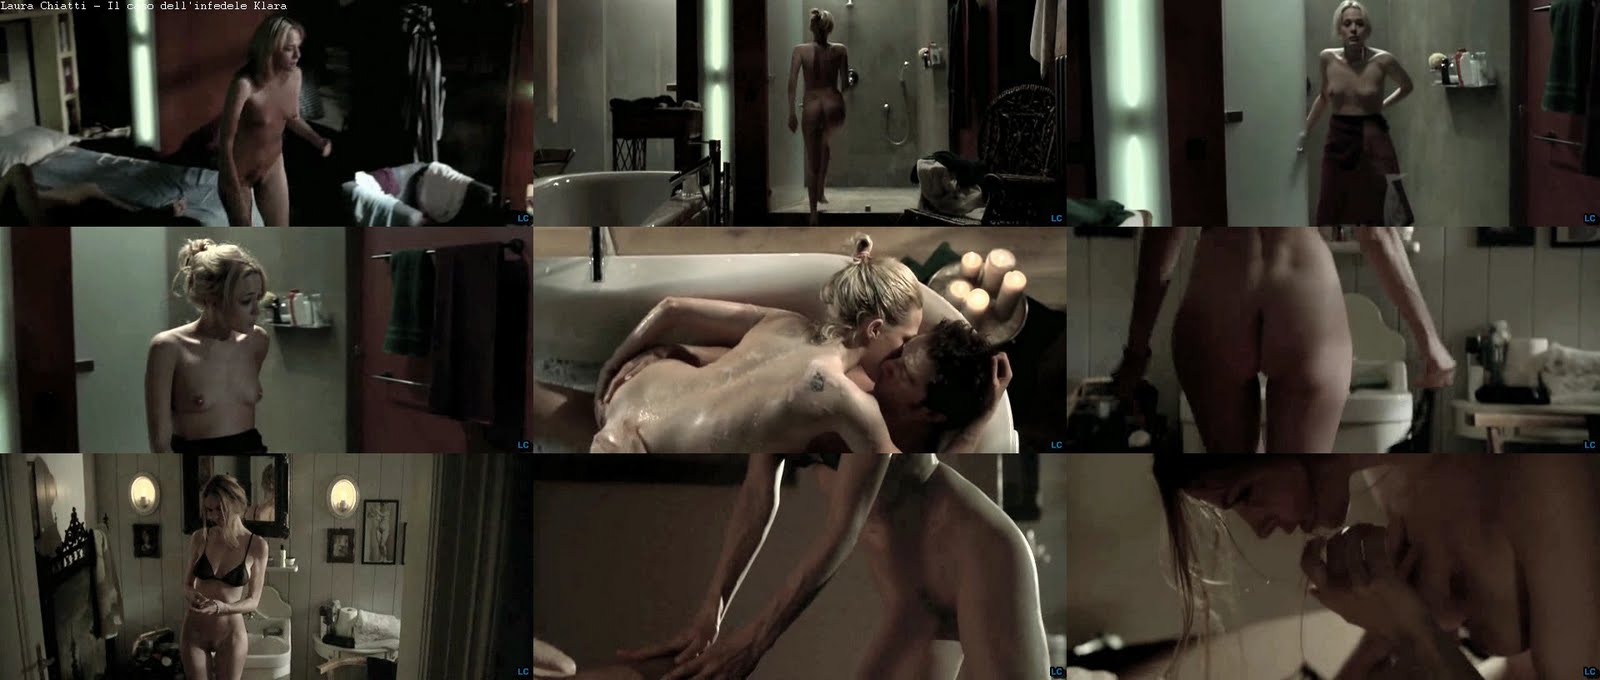 Pure Nude: Laura+Chiatti nude